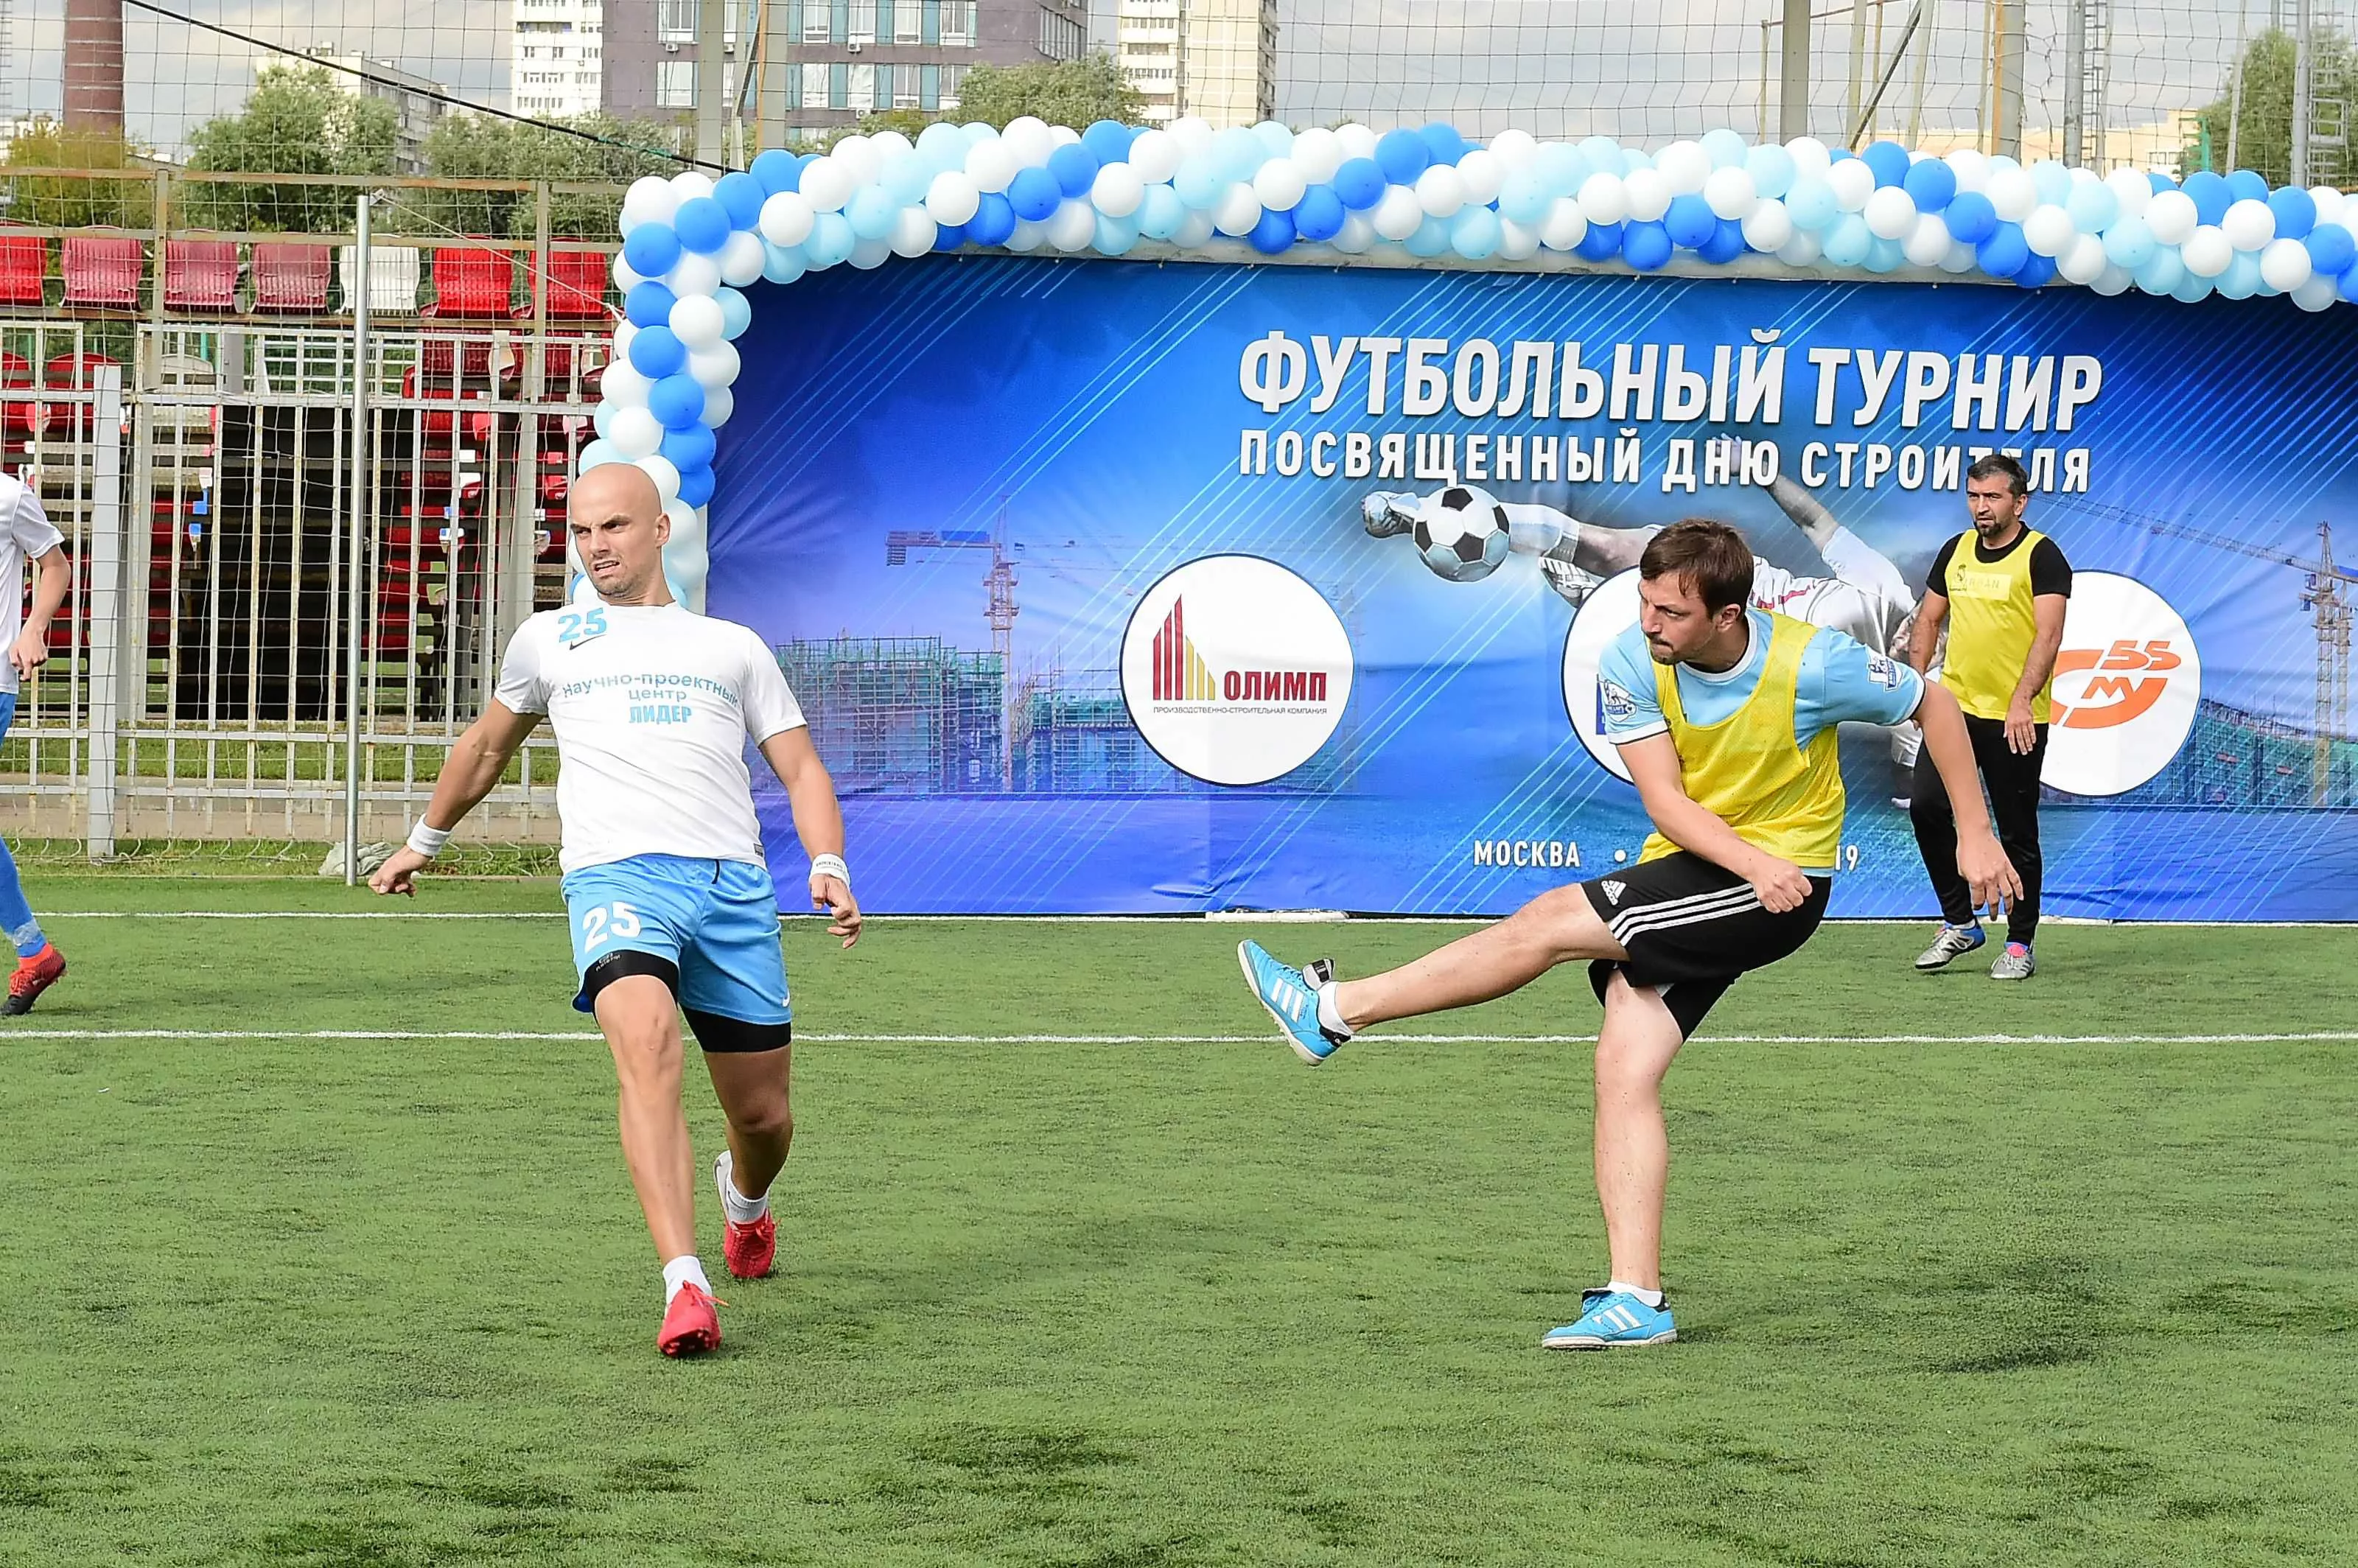 «РУСПОРТИНГ» – Организатор футбольных турниров в Москве, Санкт-Петербурге и других городах России